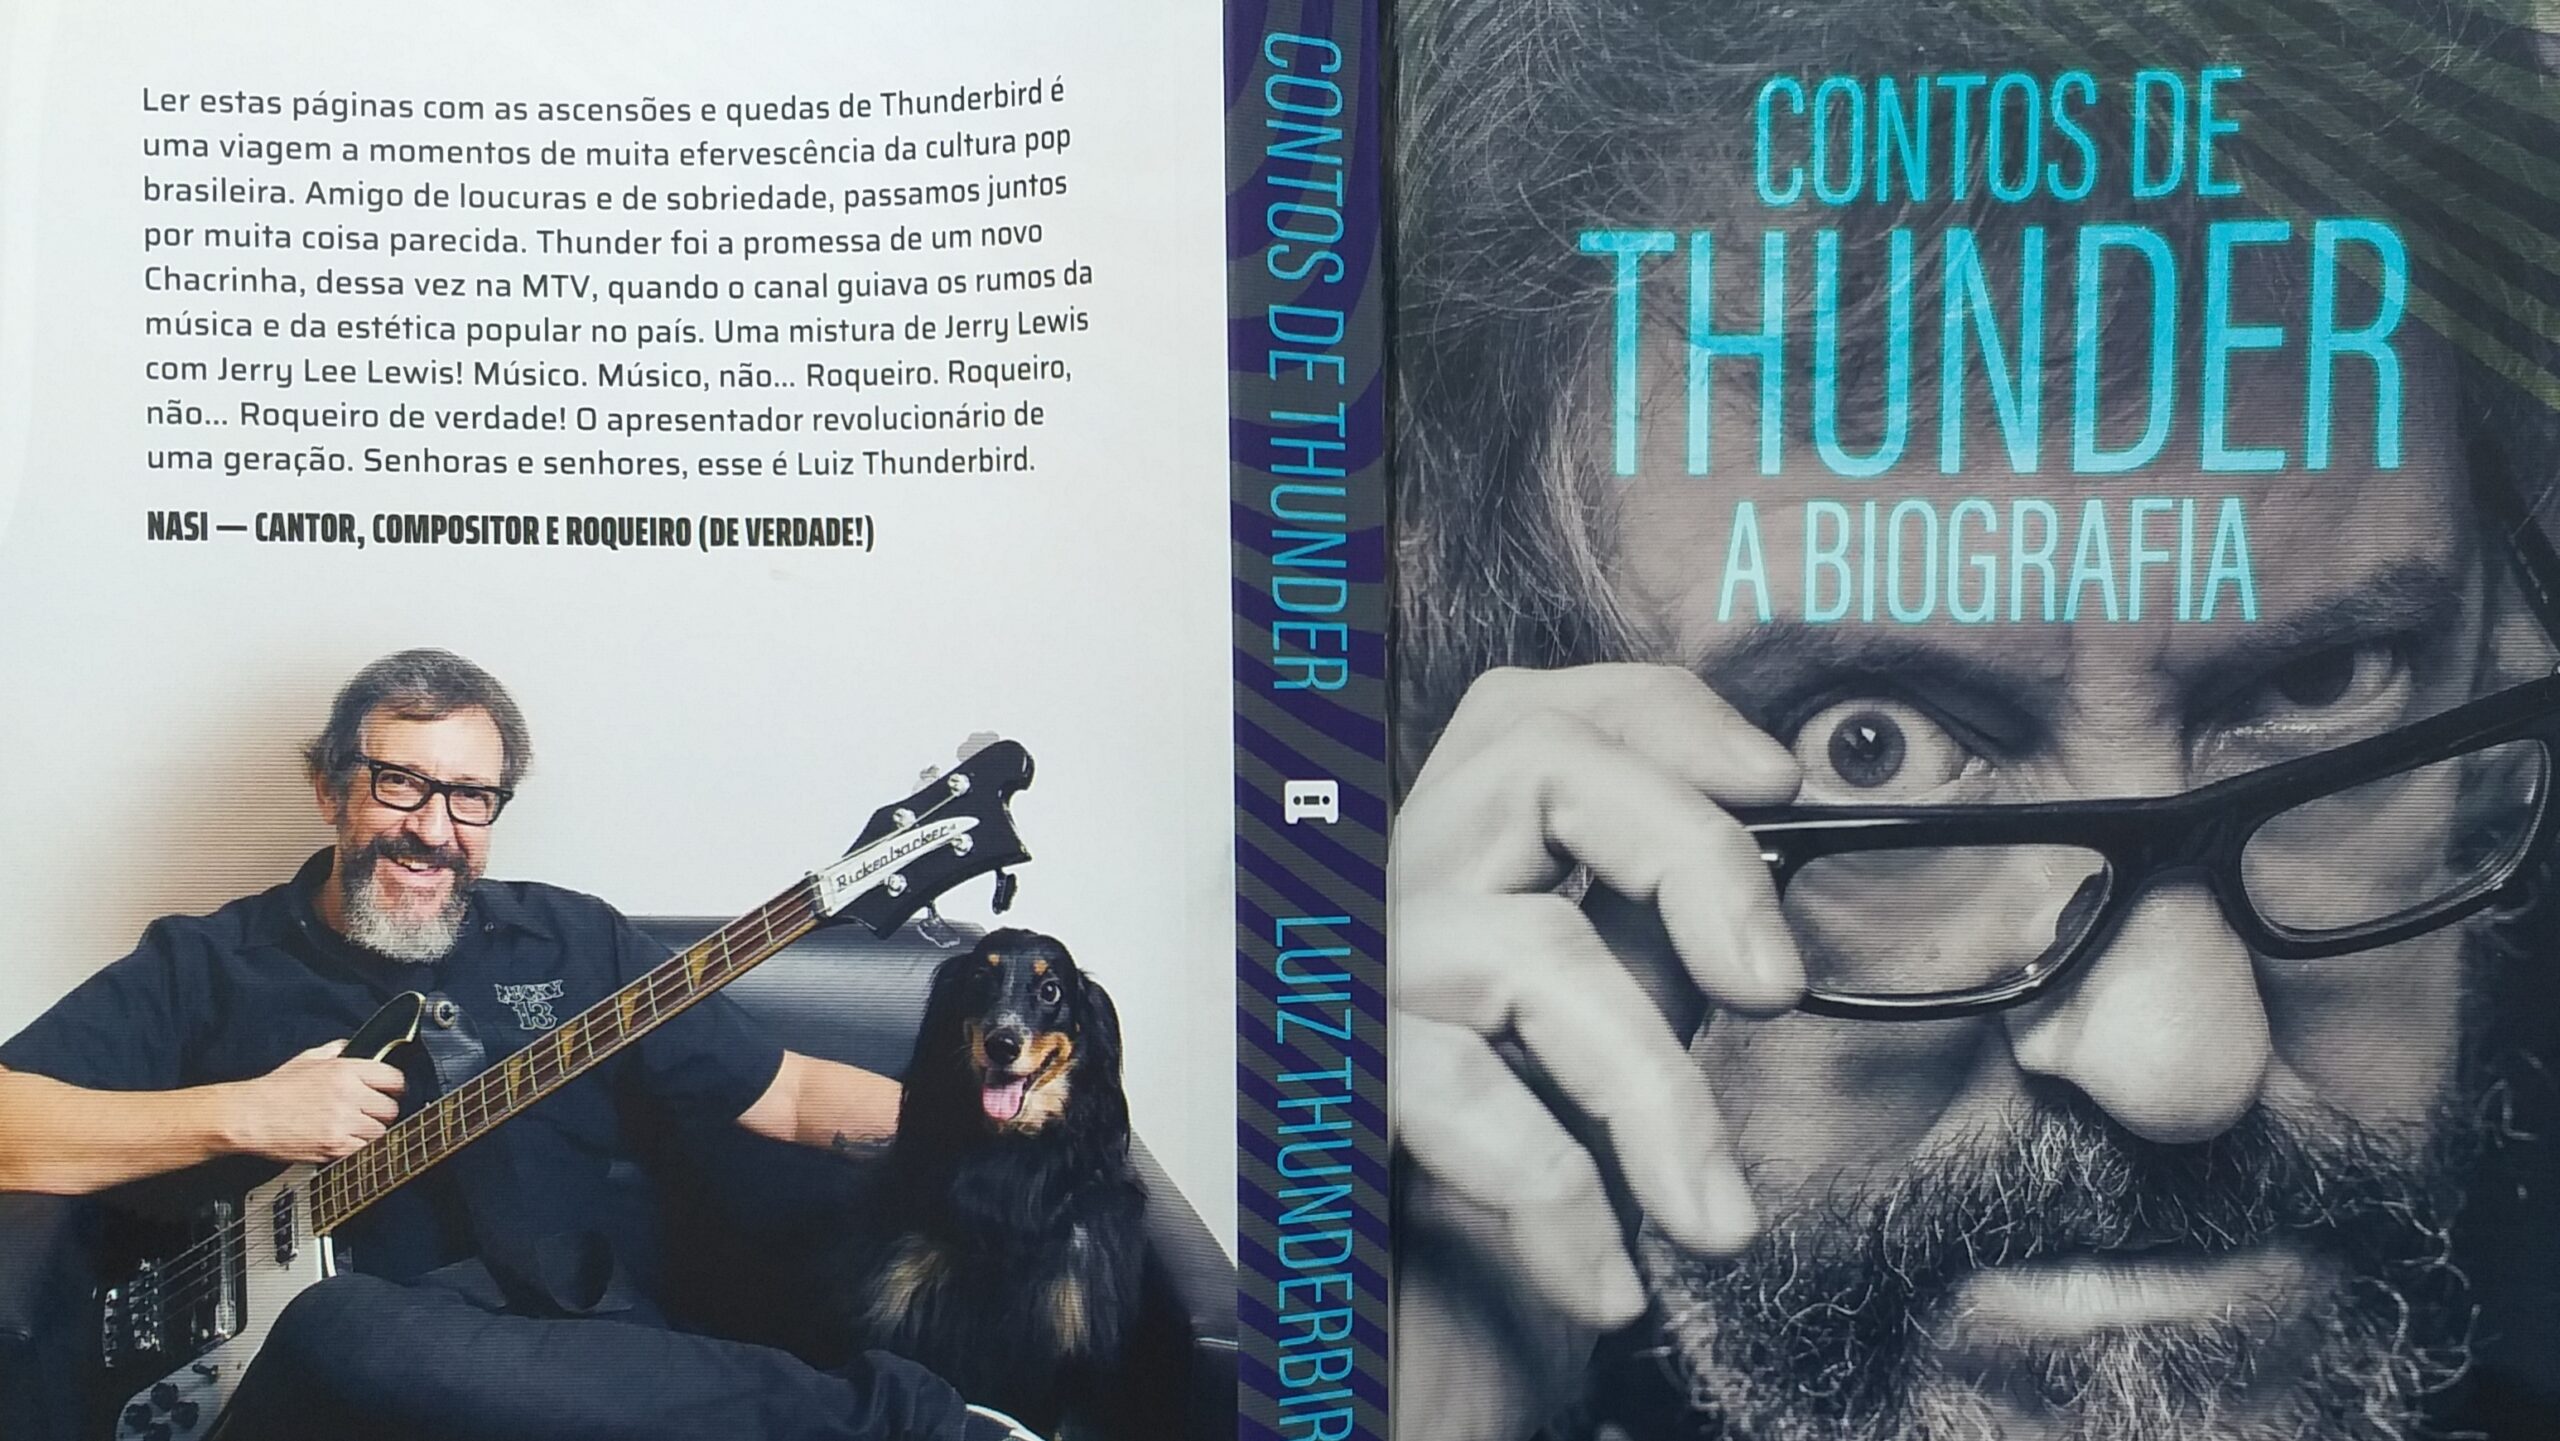 Contracapa e capa do livro "Contos de Thunder - A Biografia"